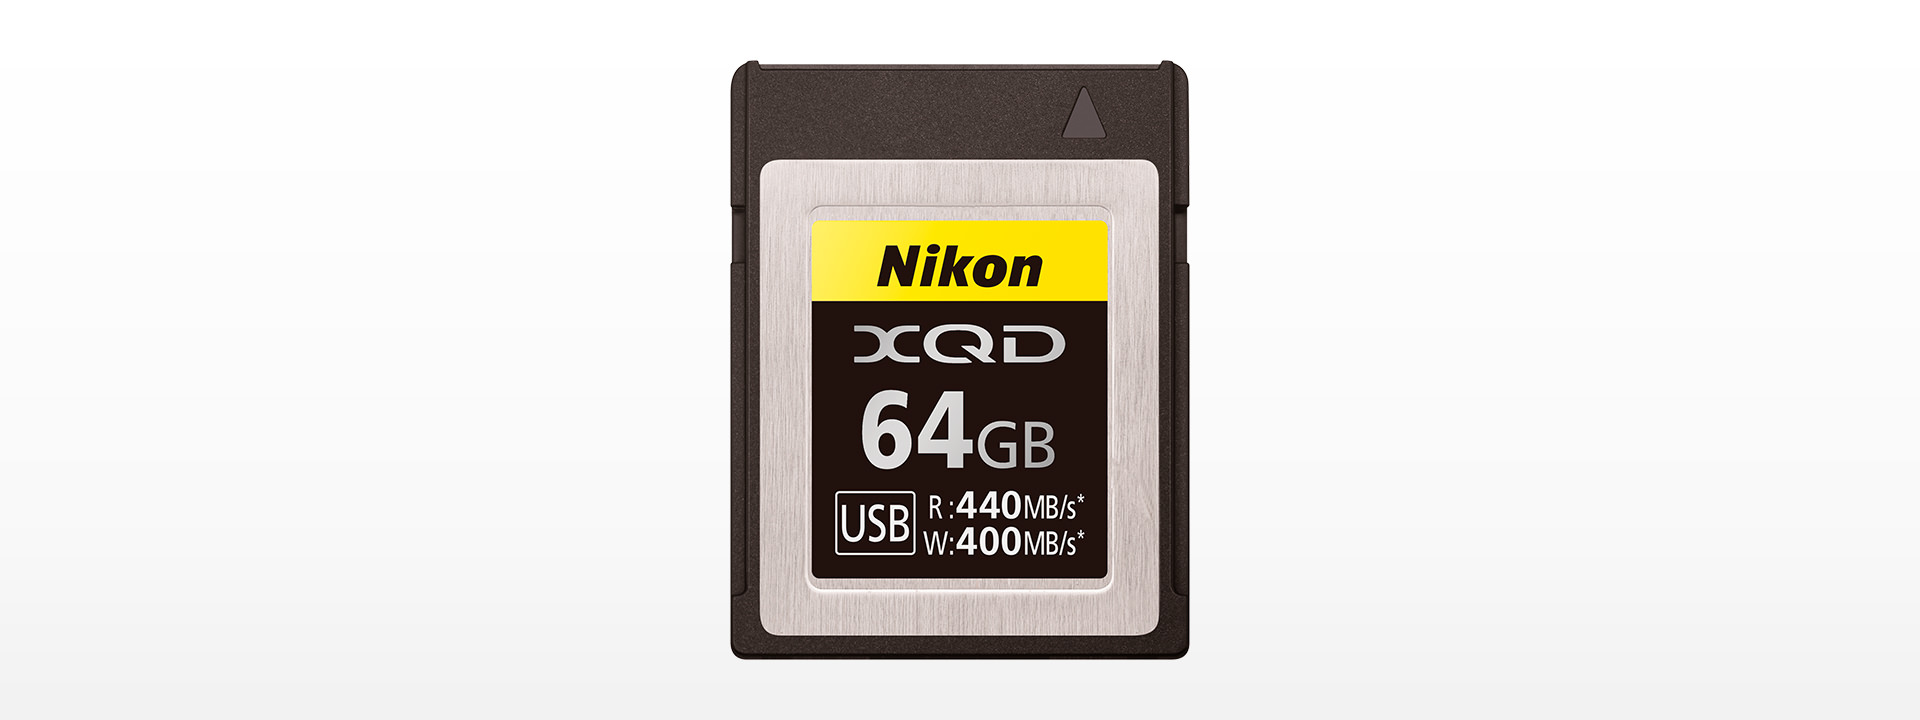 XQDメモリーカード64GB MC-XQ64G